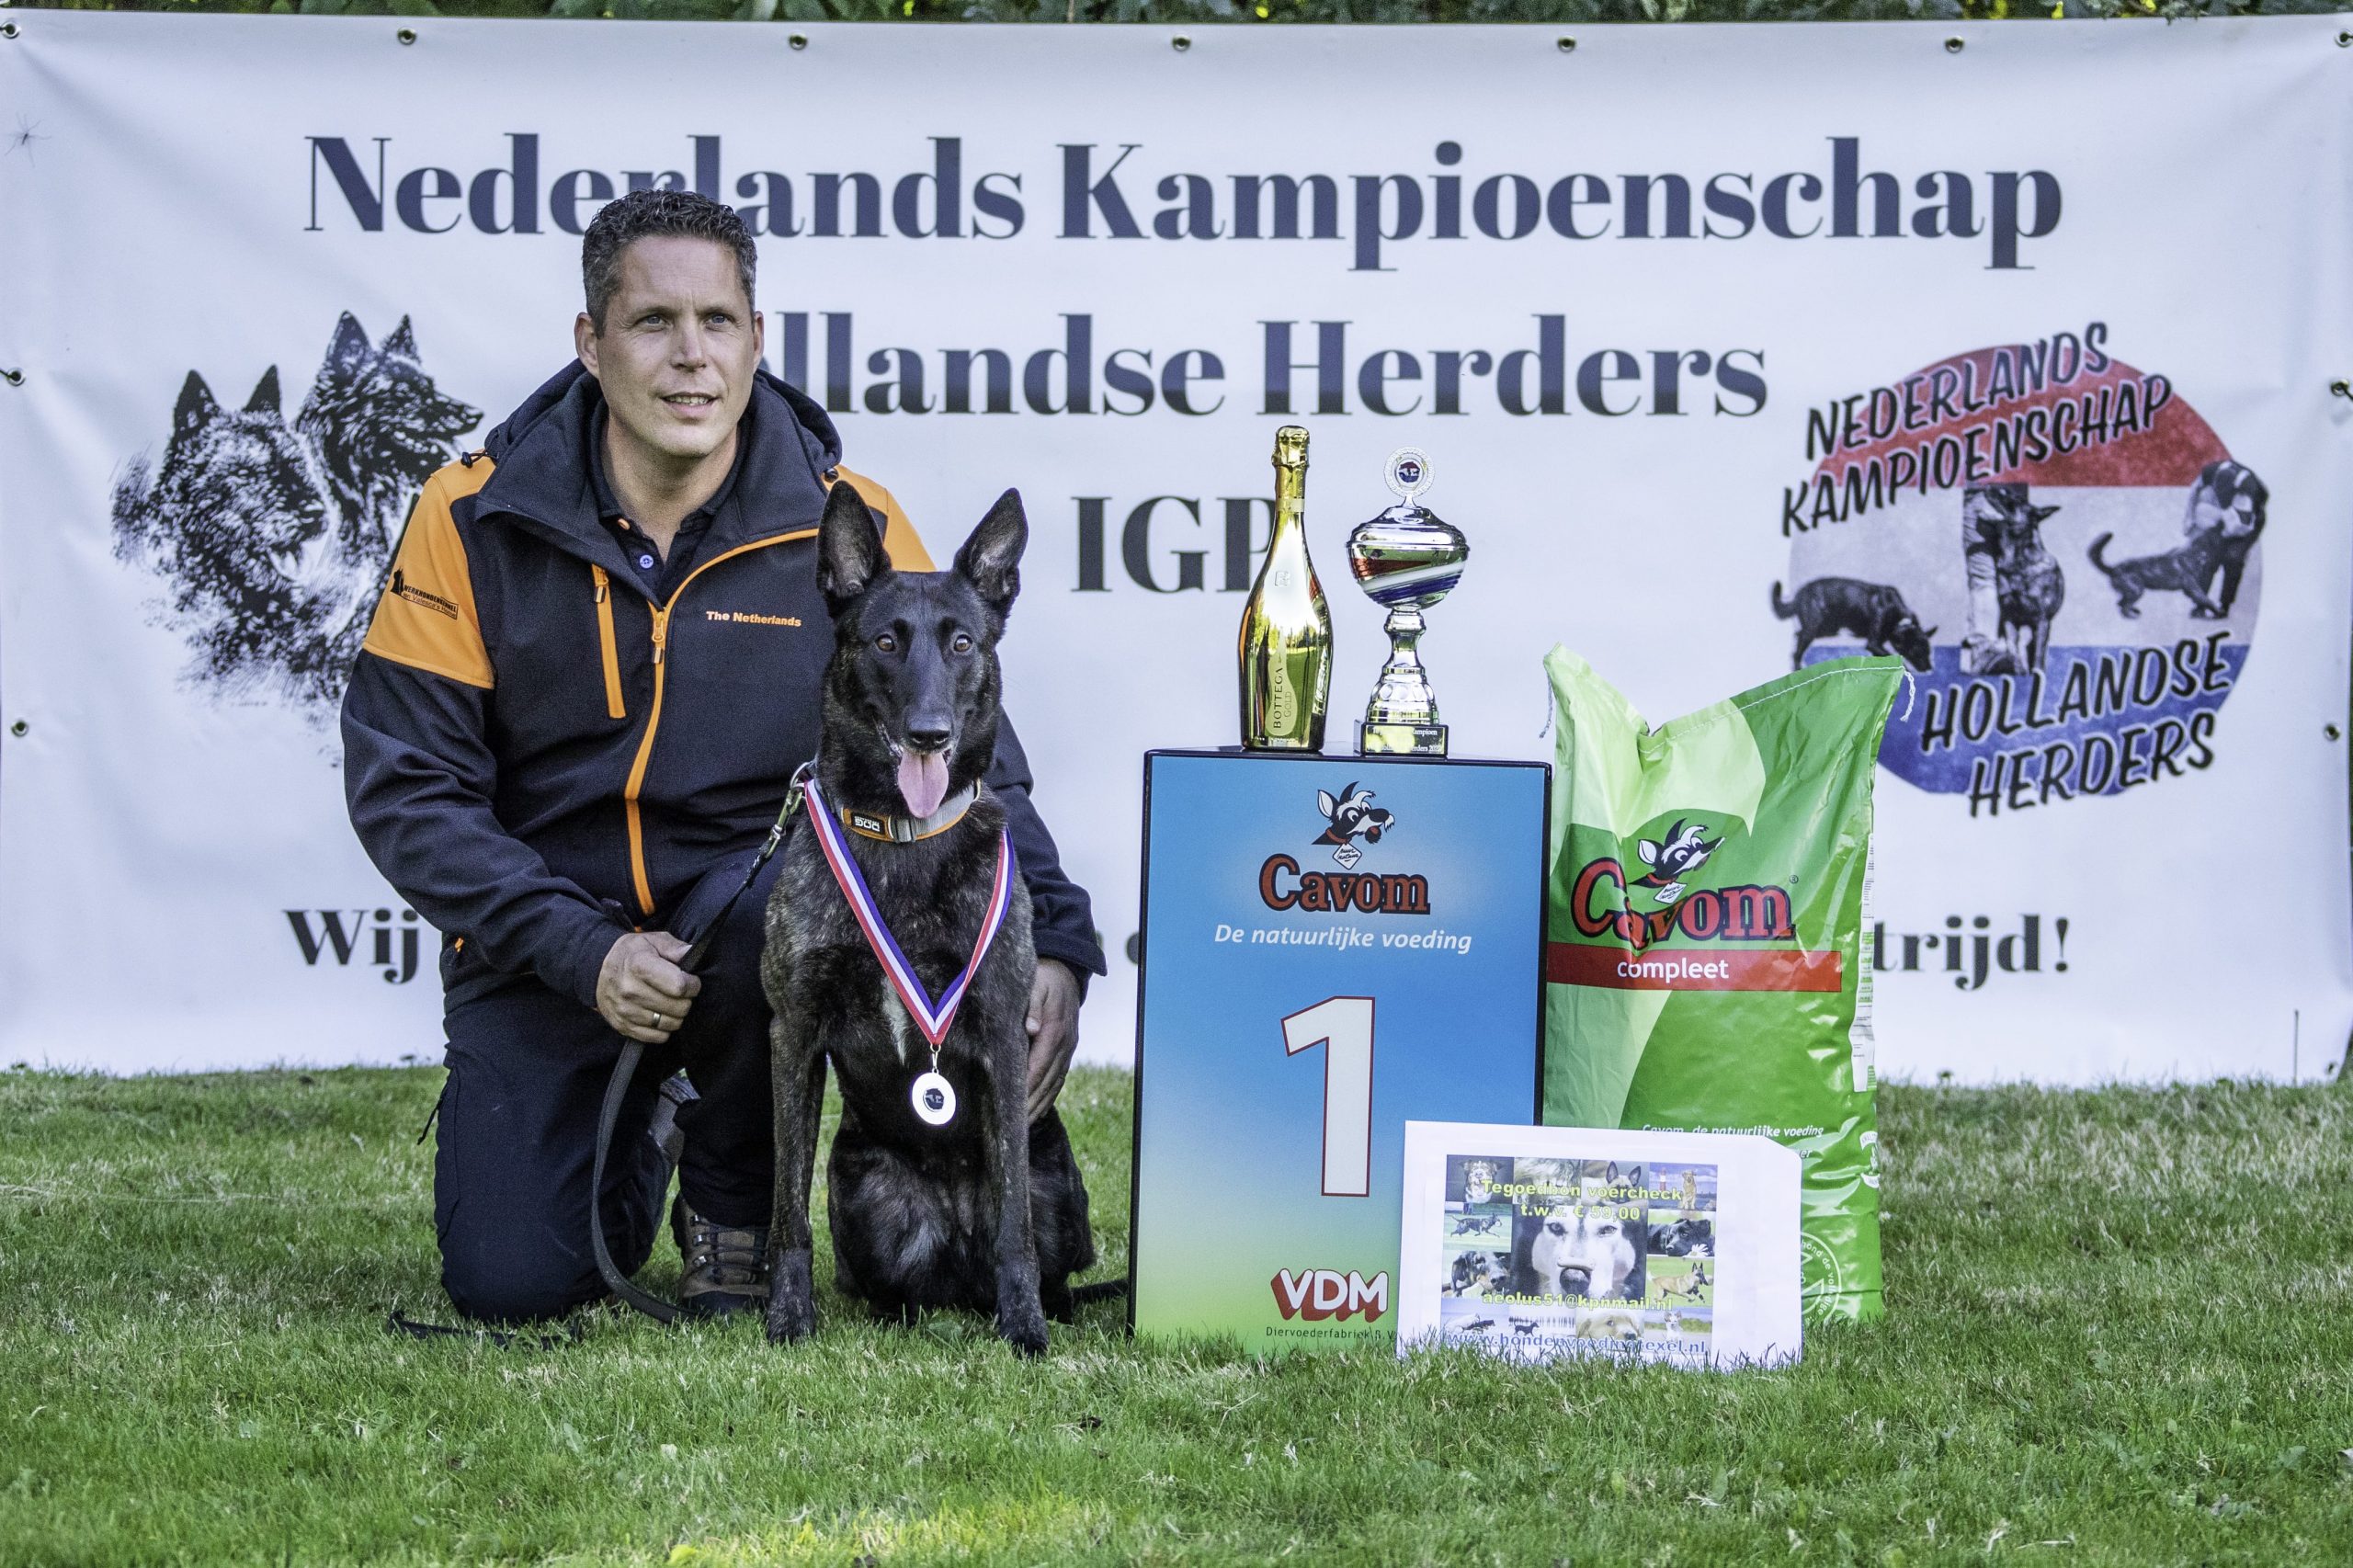 NK Hollandse Herders IGP 2022